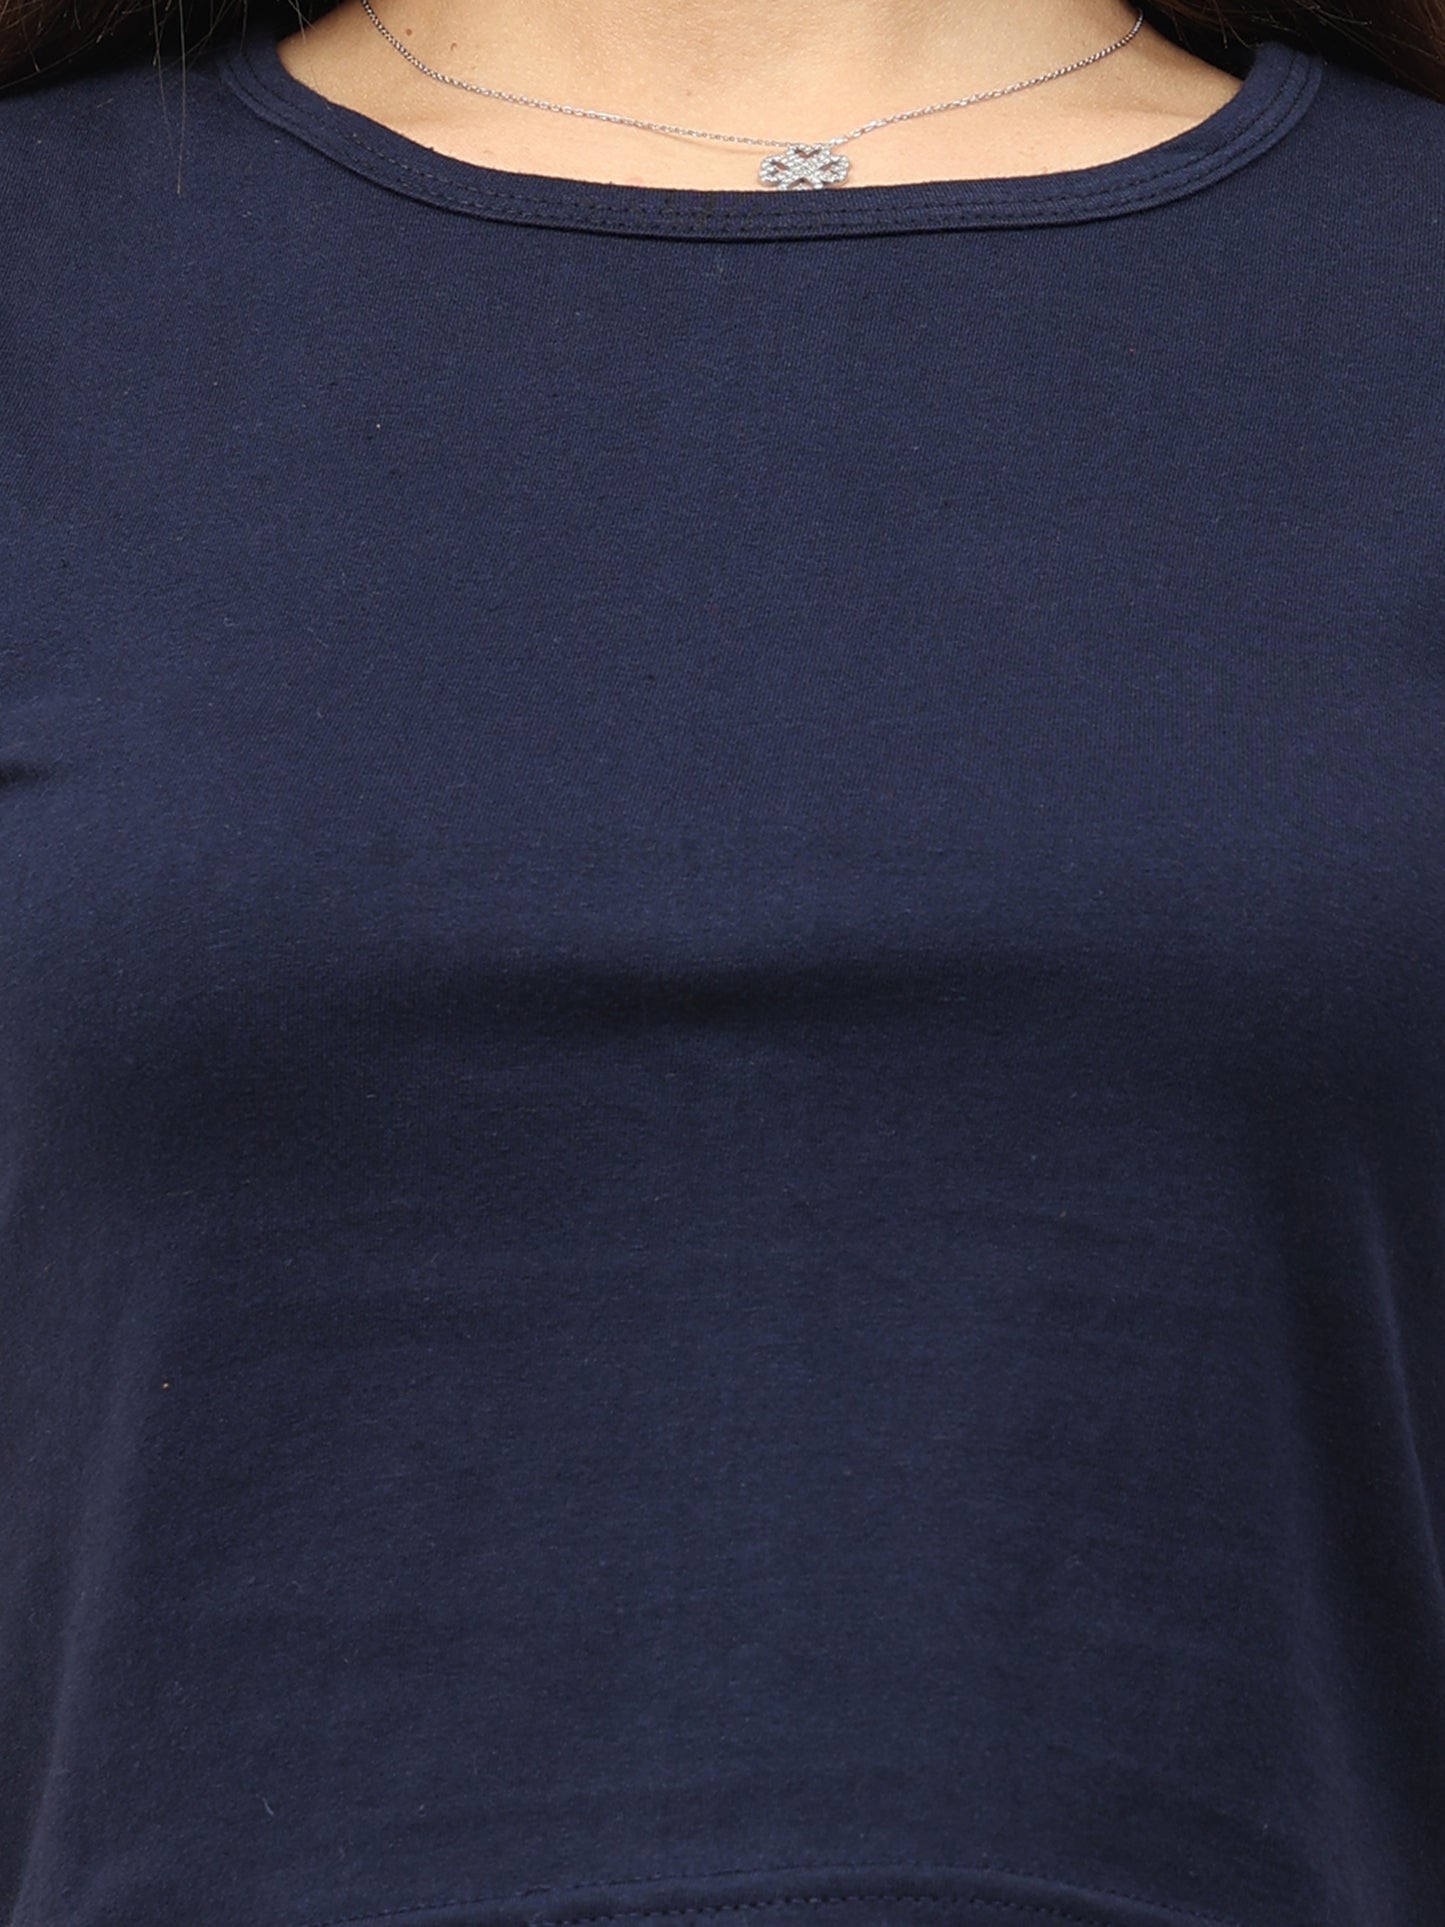 Women's Cotton Plain Round Neck Navy Blue Color Crop Top